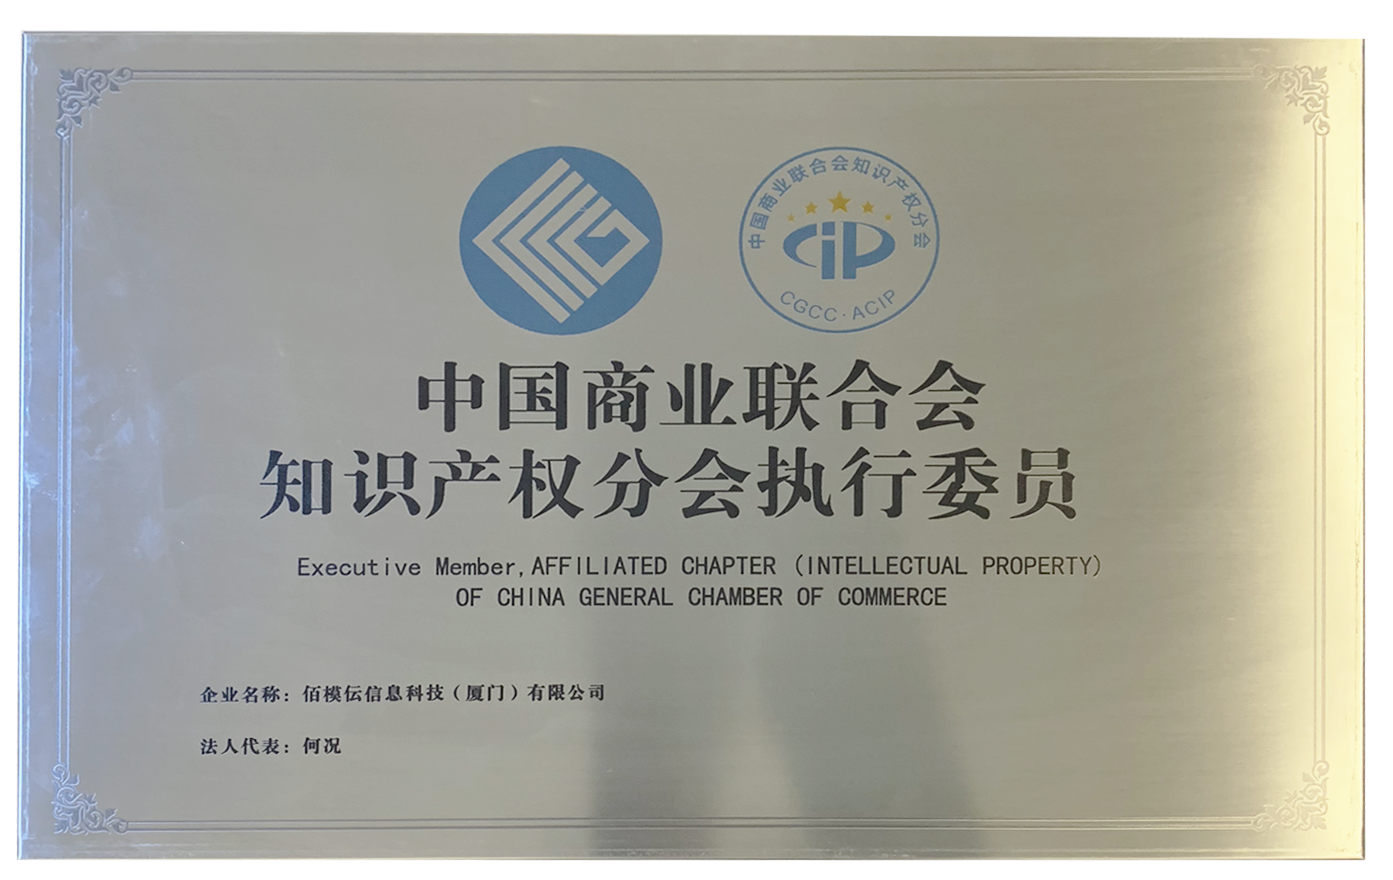 2019-中国商业联合会